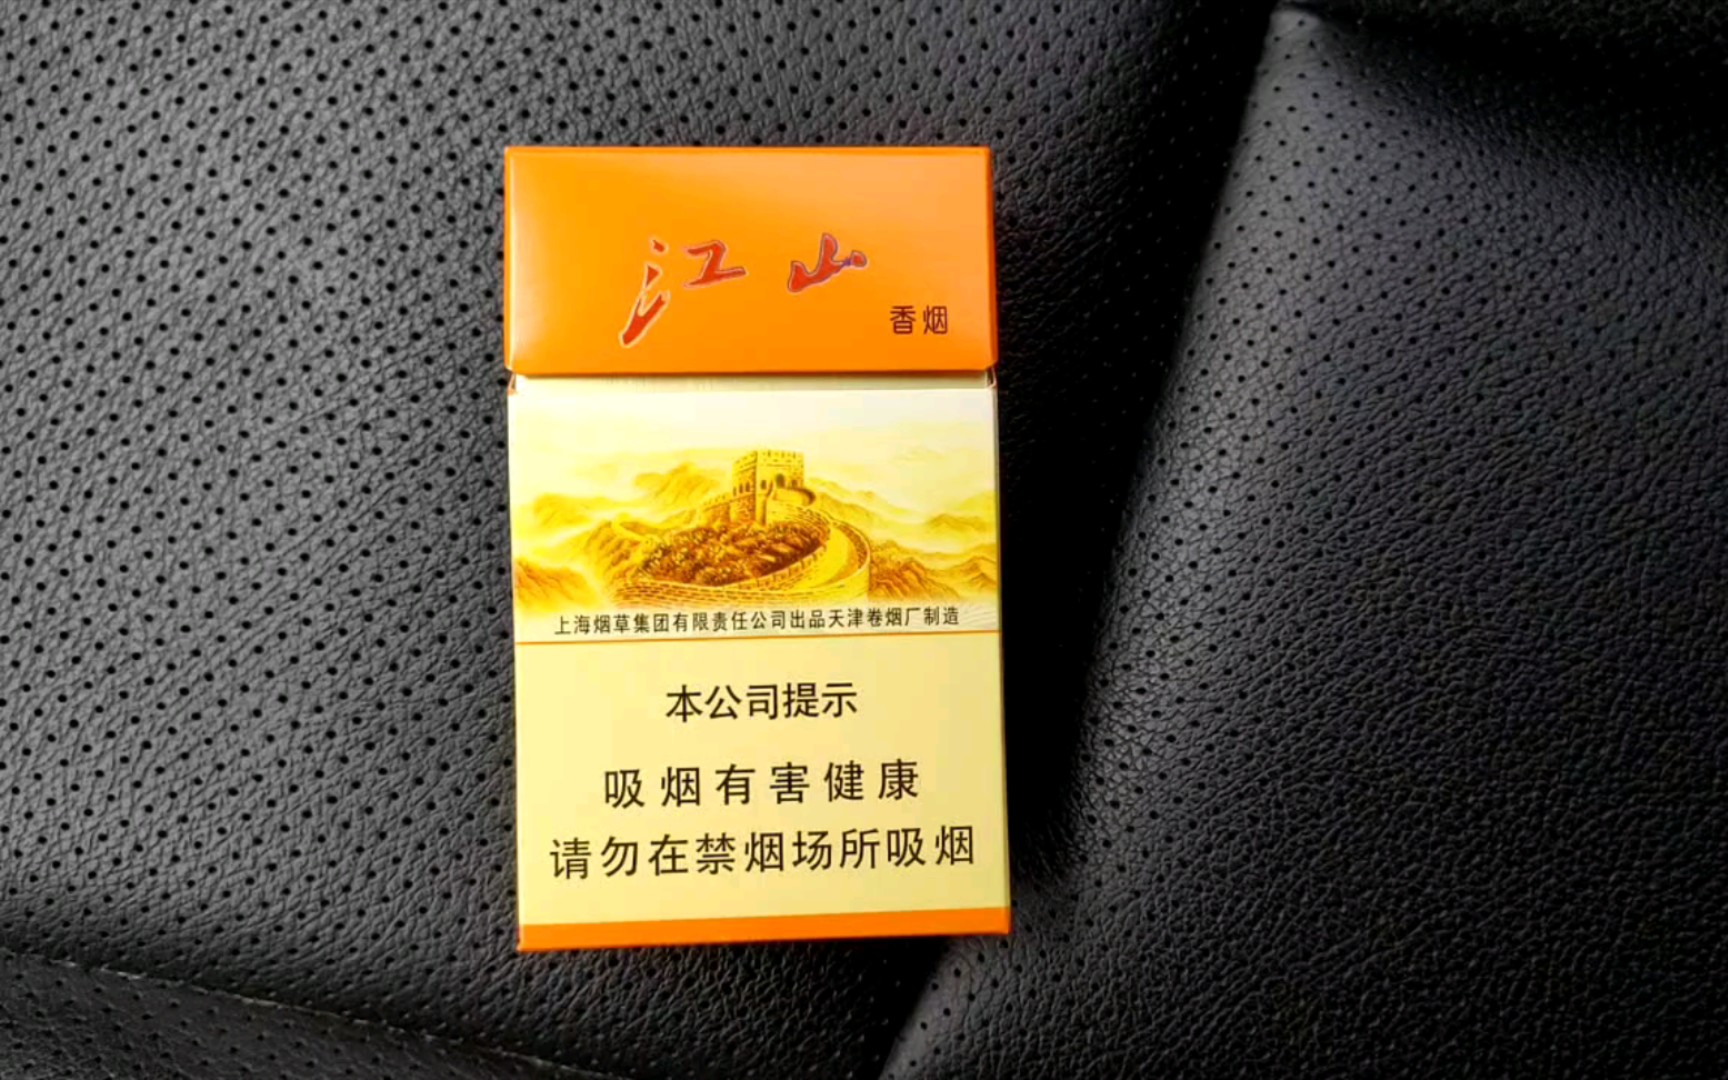 简单开盒,味道分享:江山精品,俗称小江山,开盒闻着有药香,带有咸香的